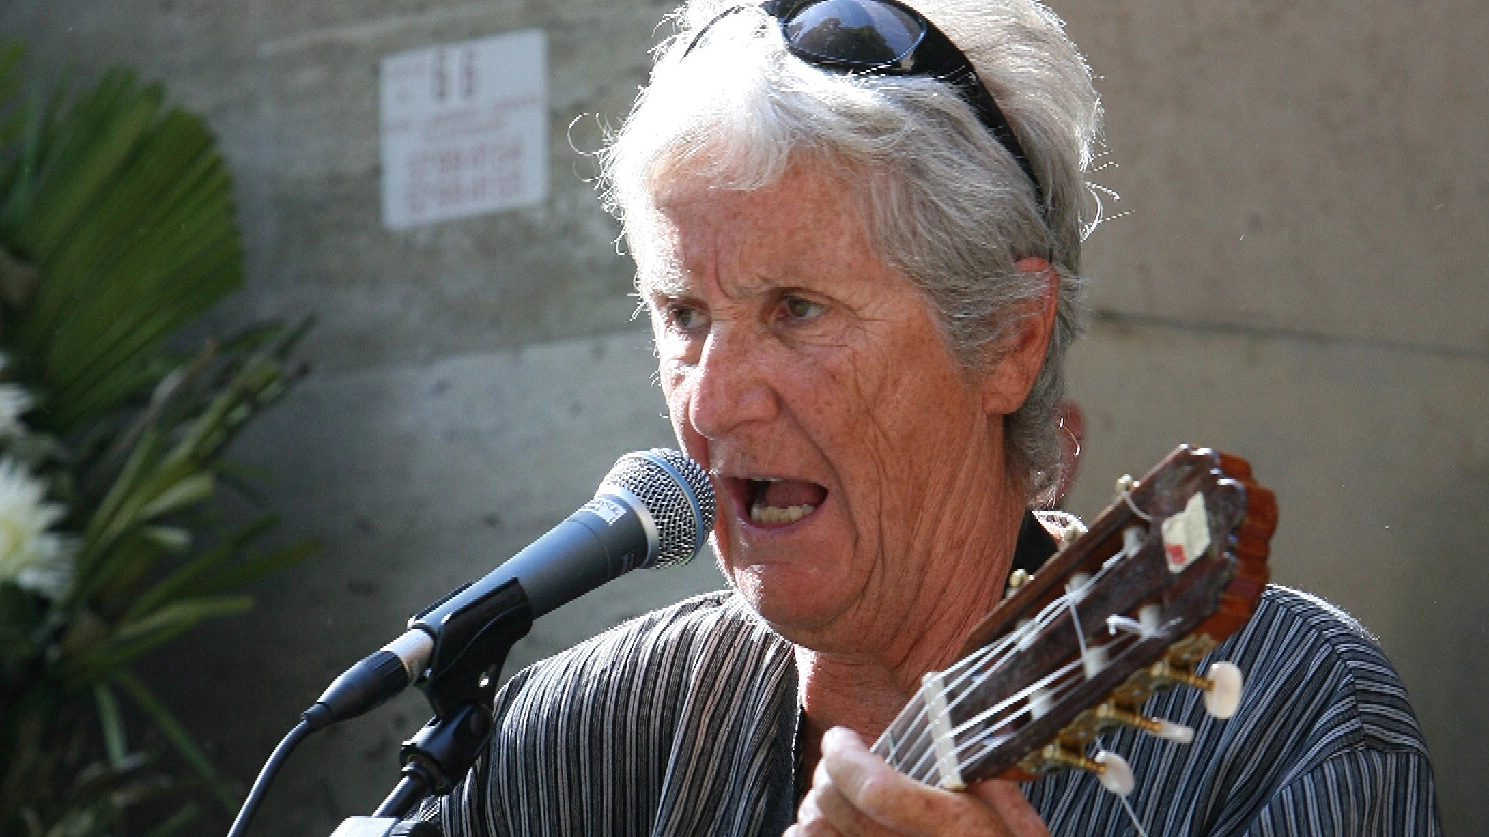 Cantante, compositrice, ricercatrice: è morta a 87 anni